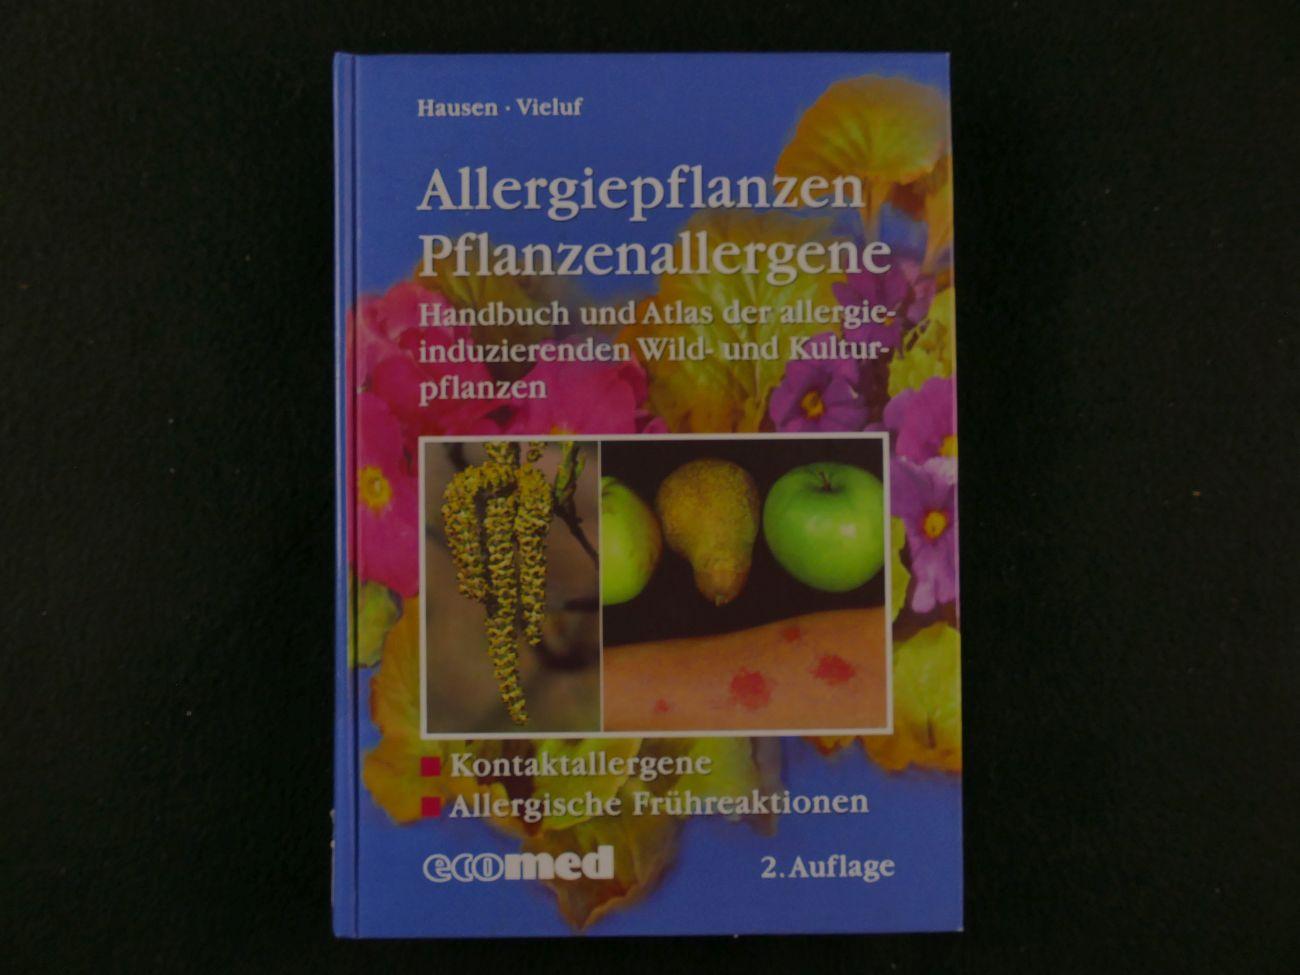 Hausen, B.M., Vieluf, I.K. - Allergiepflanzen Pflanzenallergene. Handbuch und Atlas der allergieinduzierenden Wild- und Kulturpflanzen. 2e Auflage  ( 4 foto's)